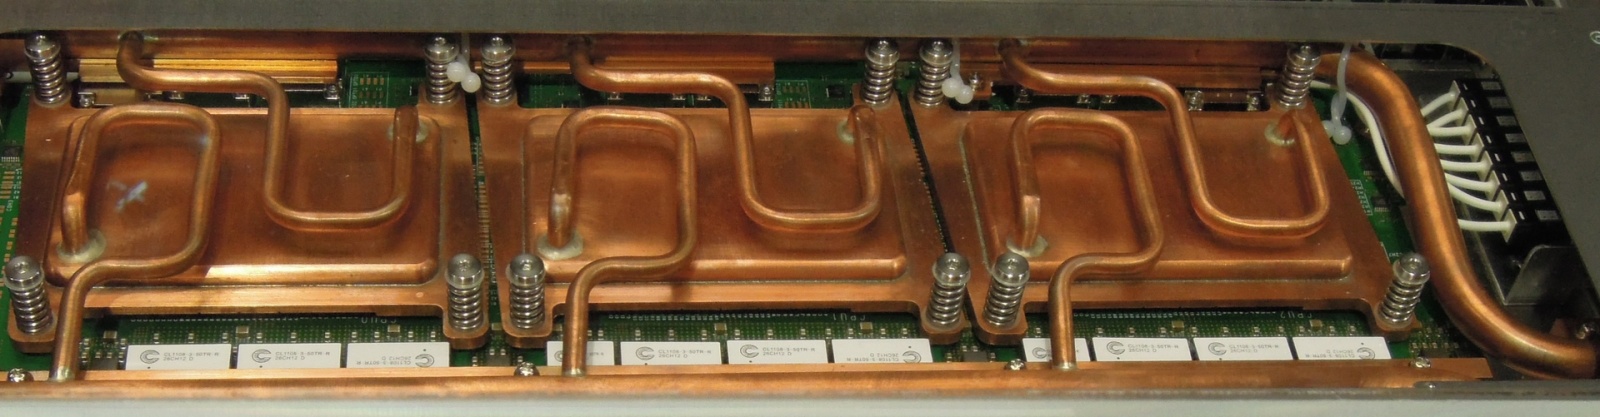 Суперкомпьютер с системой водяного охлаждения HP Apollo 8000 - 5